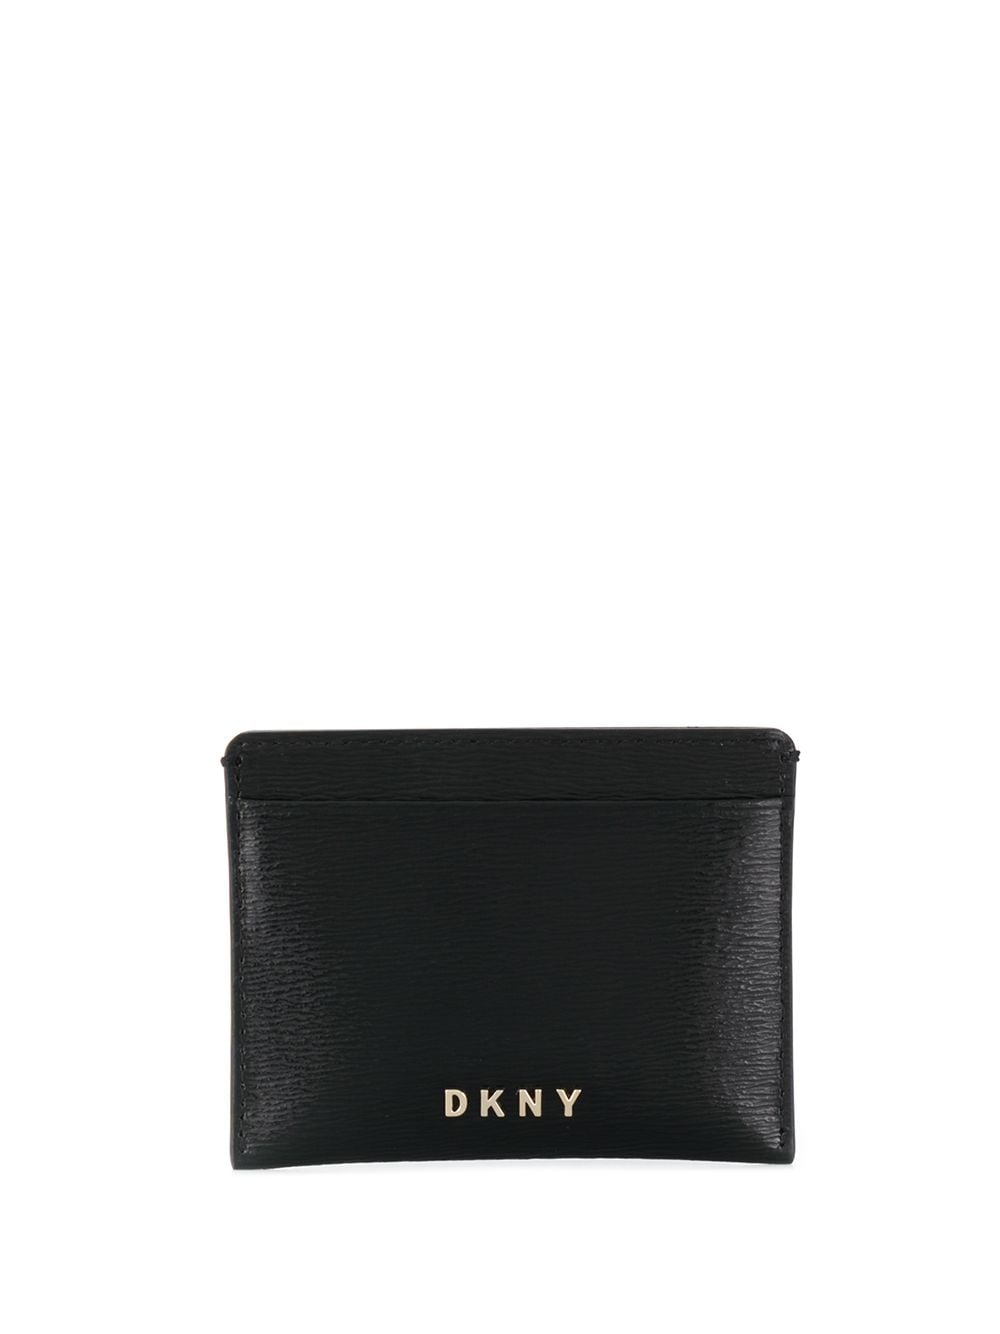 фото DKNY фактурный кошелек